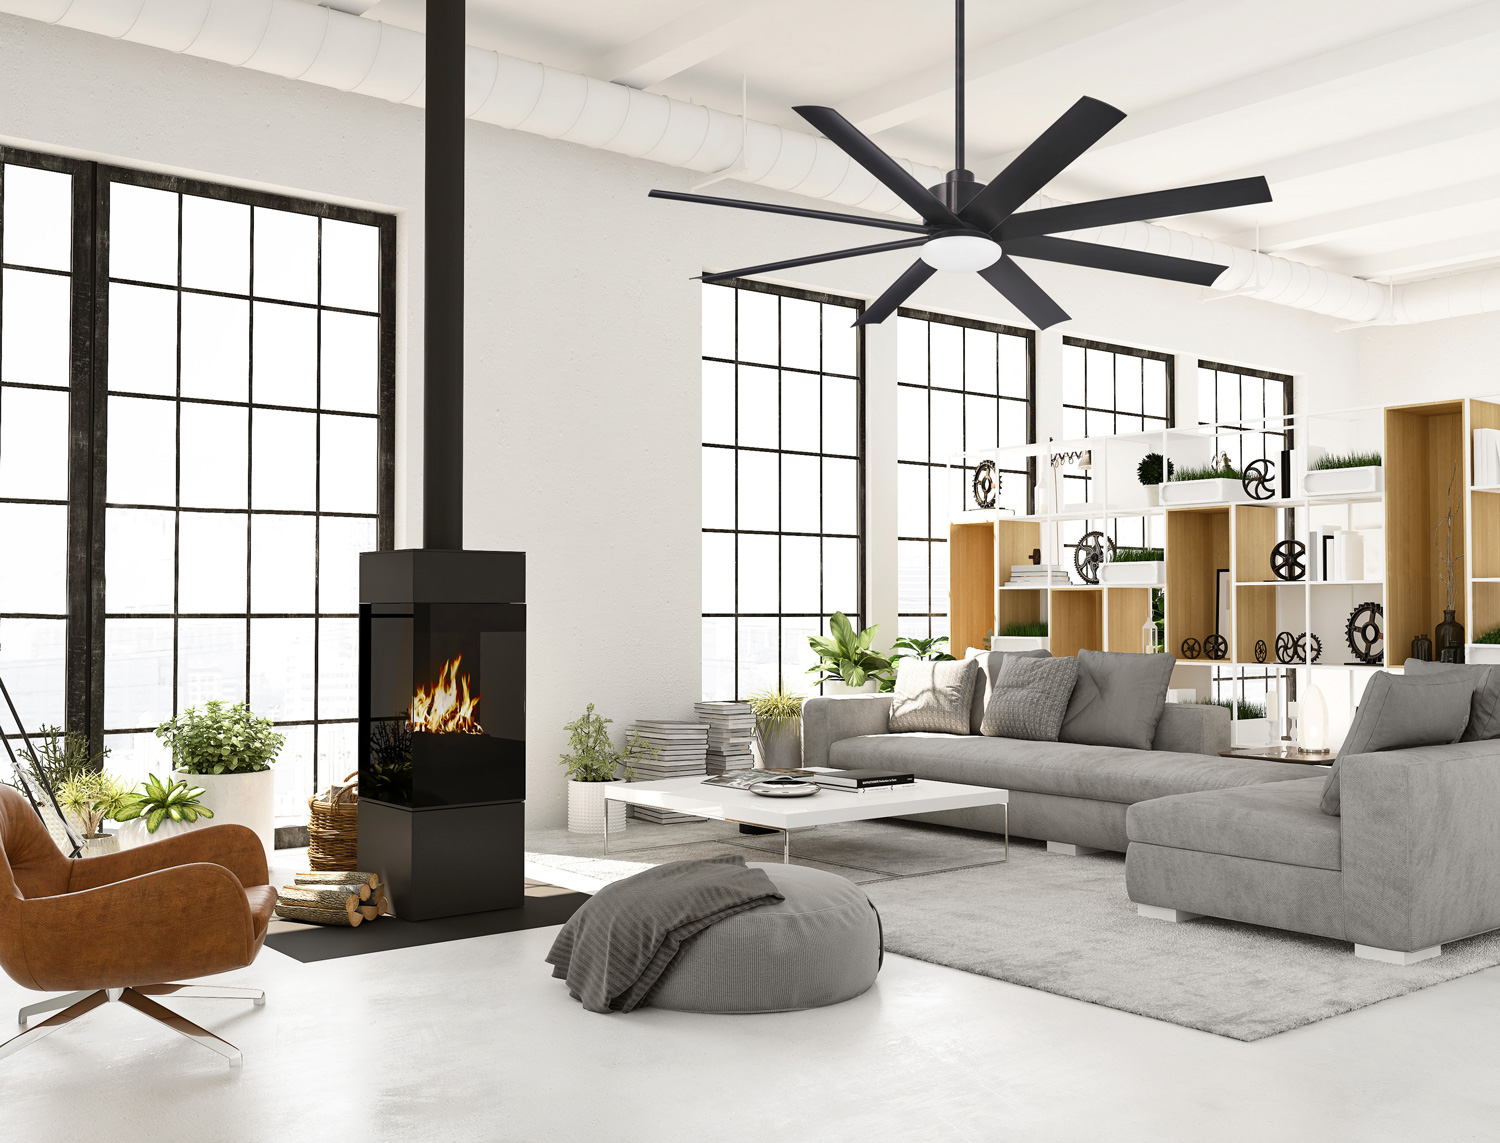 Slipstream LED Ceiling Fan in a living room.